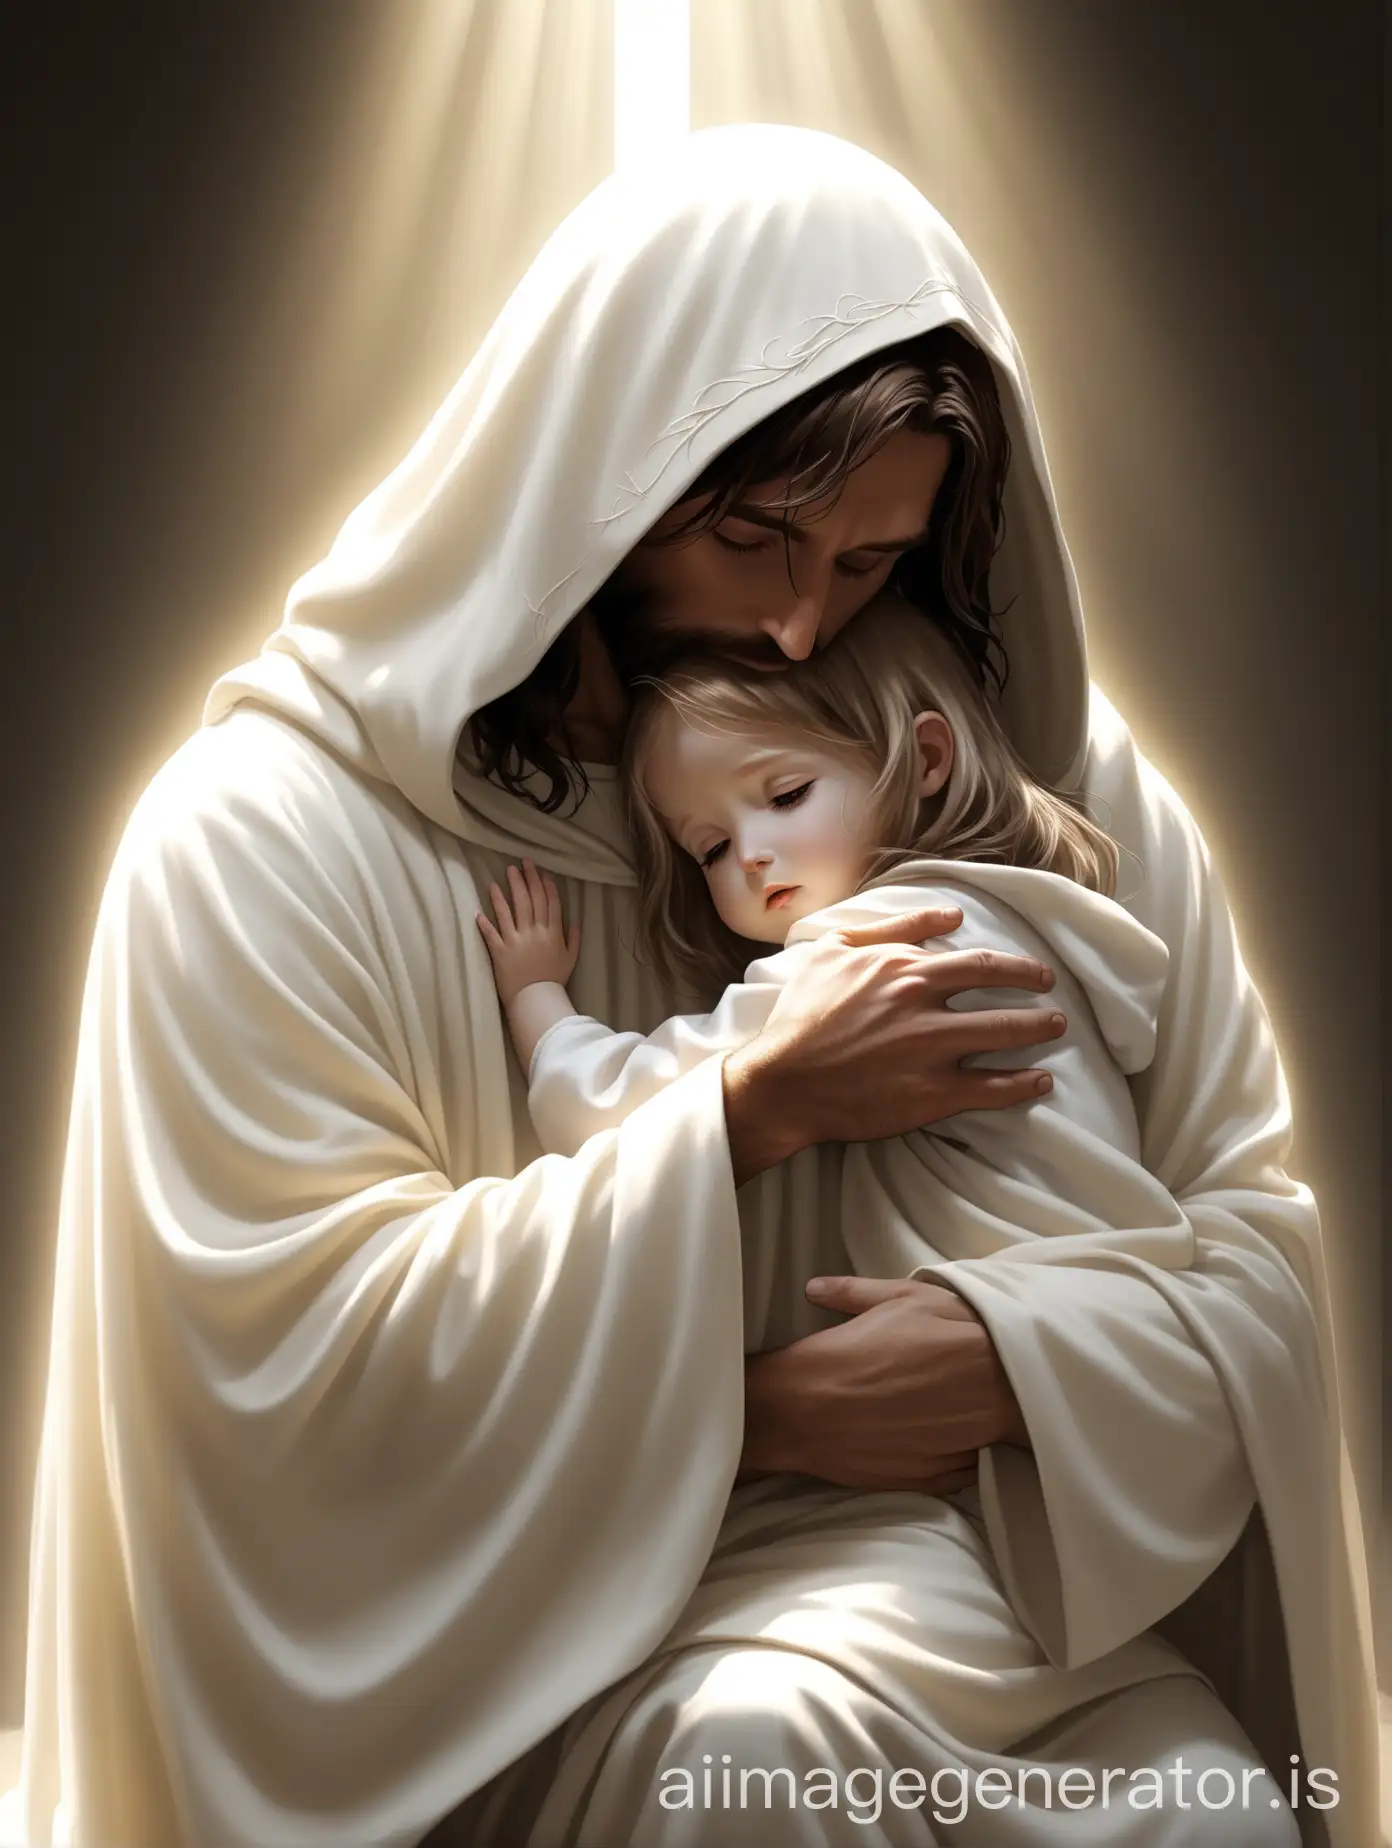 Divine-Comfort-Jesus-Christ-Embraces-a-Child-in-Radiant-Light